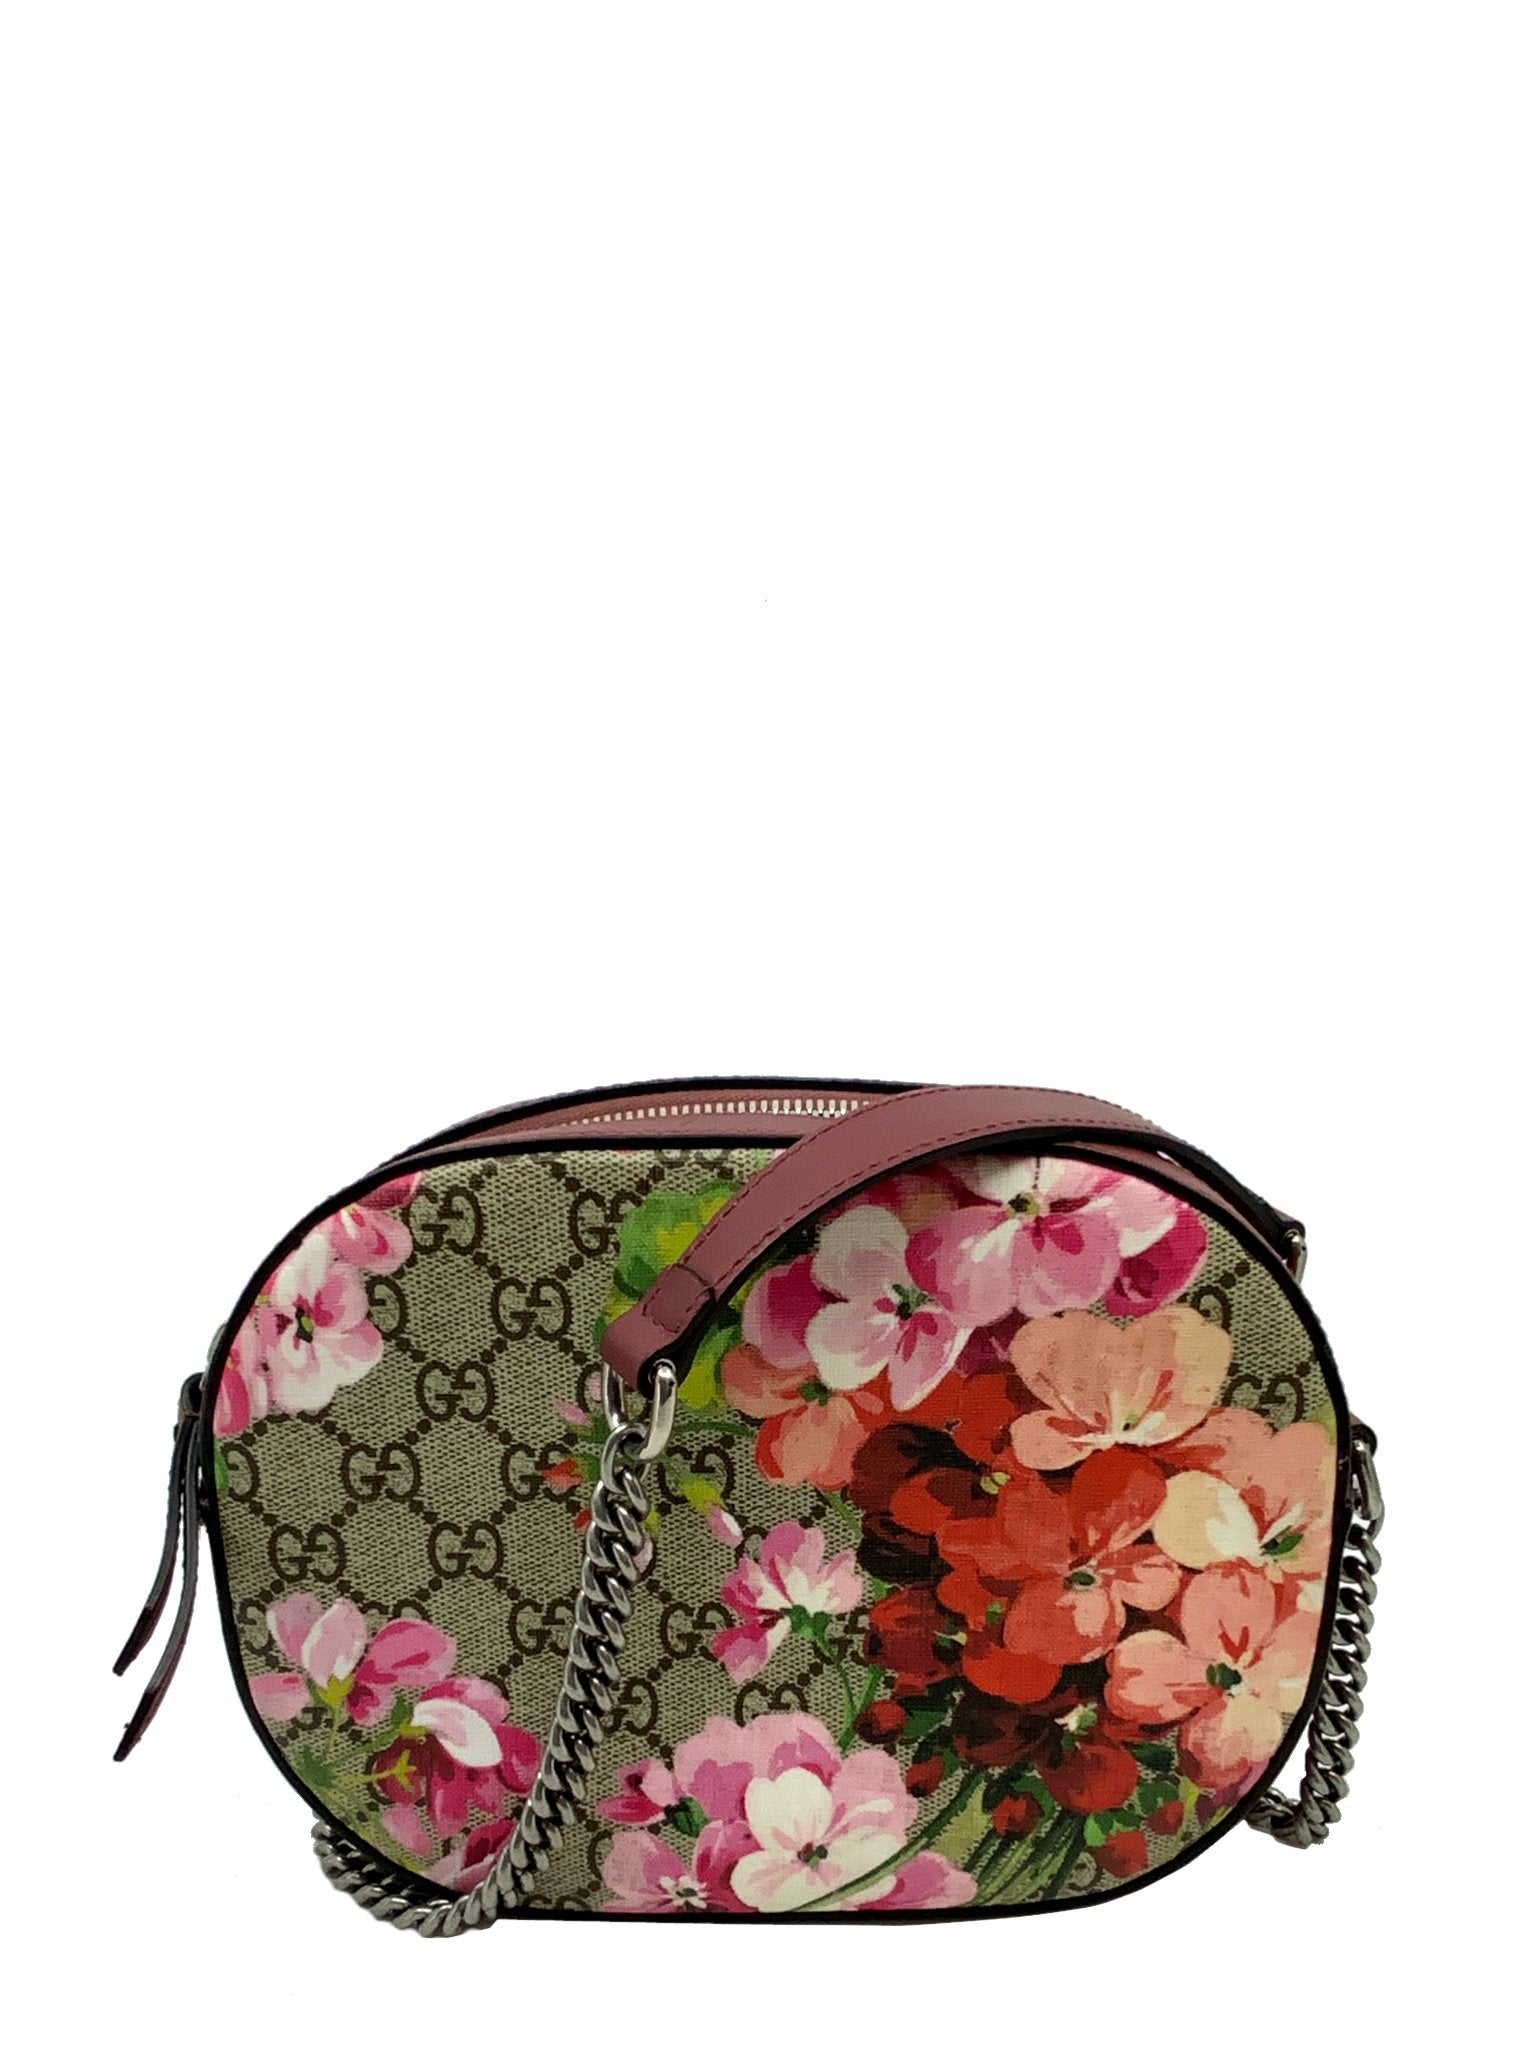 Gucci Blooms GG Supreme Mini Chain Crossbody Bag